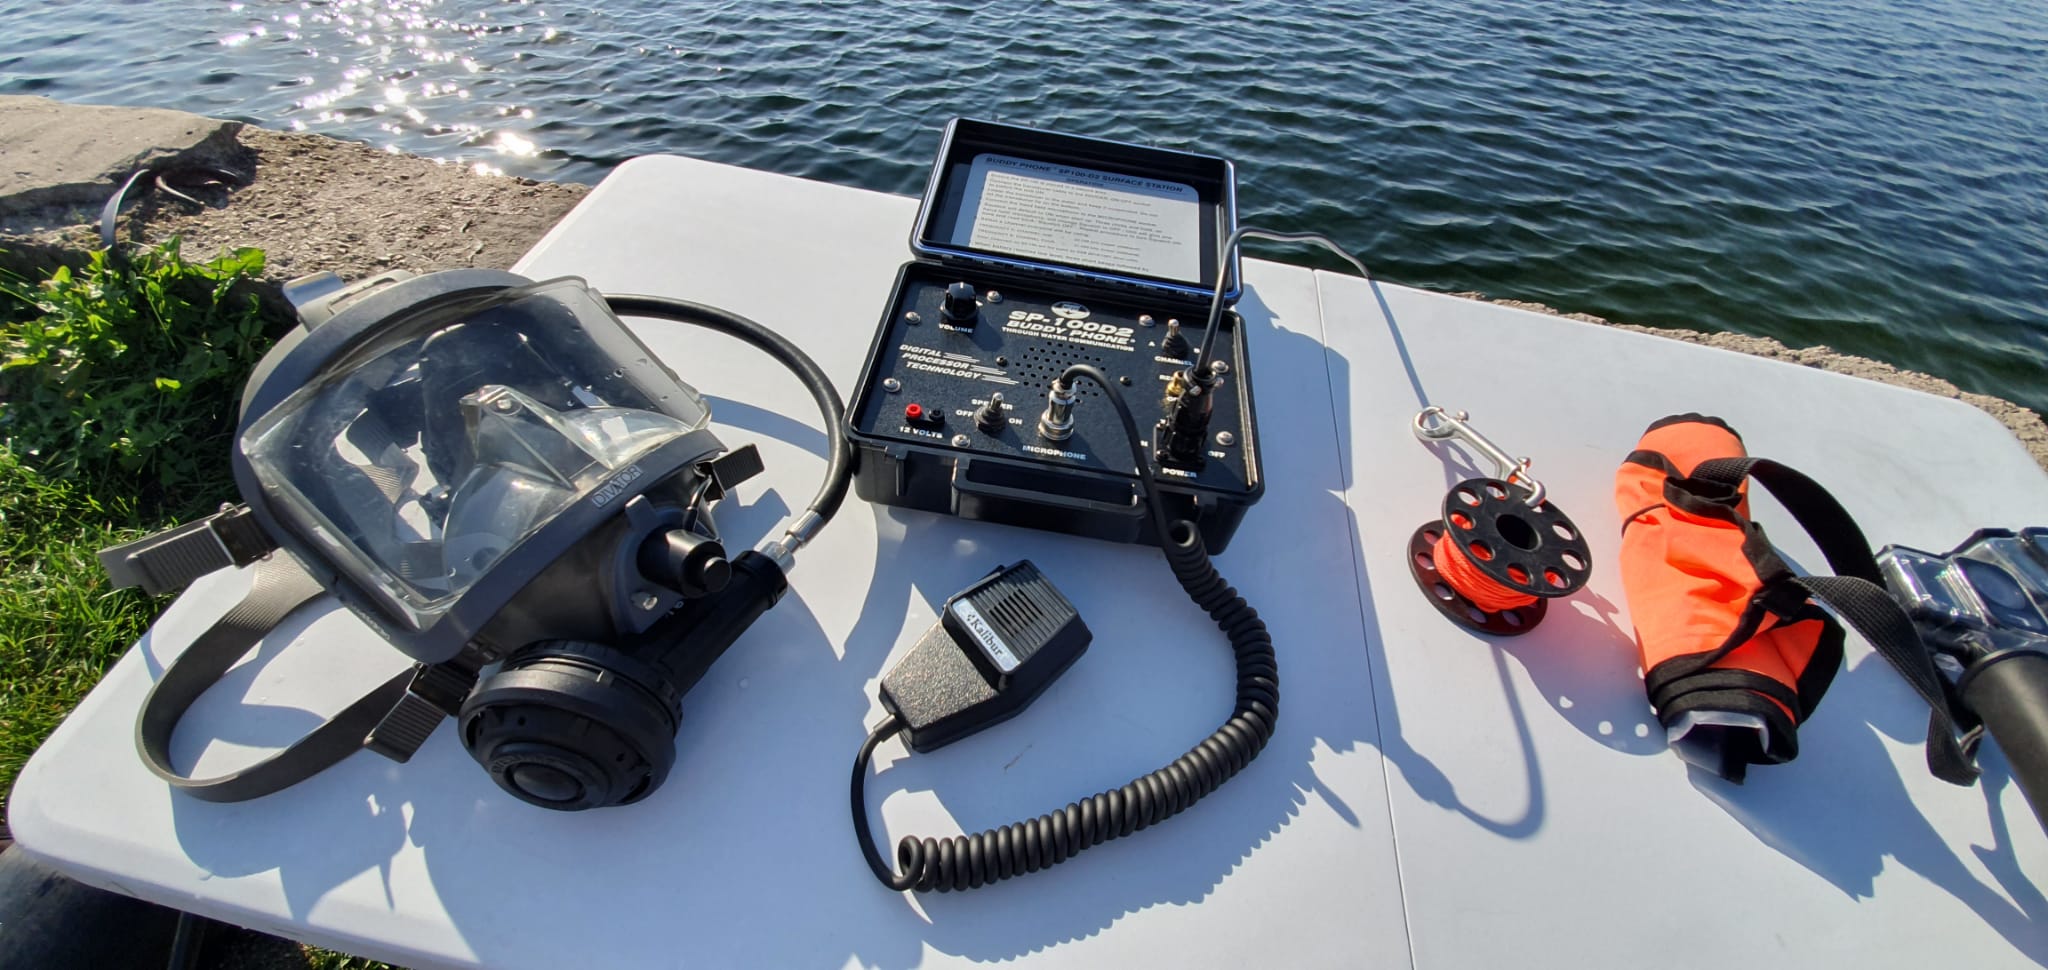 Équipements de communication dans les travaux sous-marins